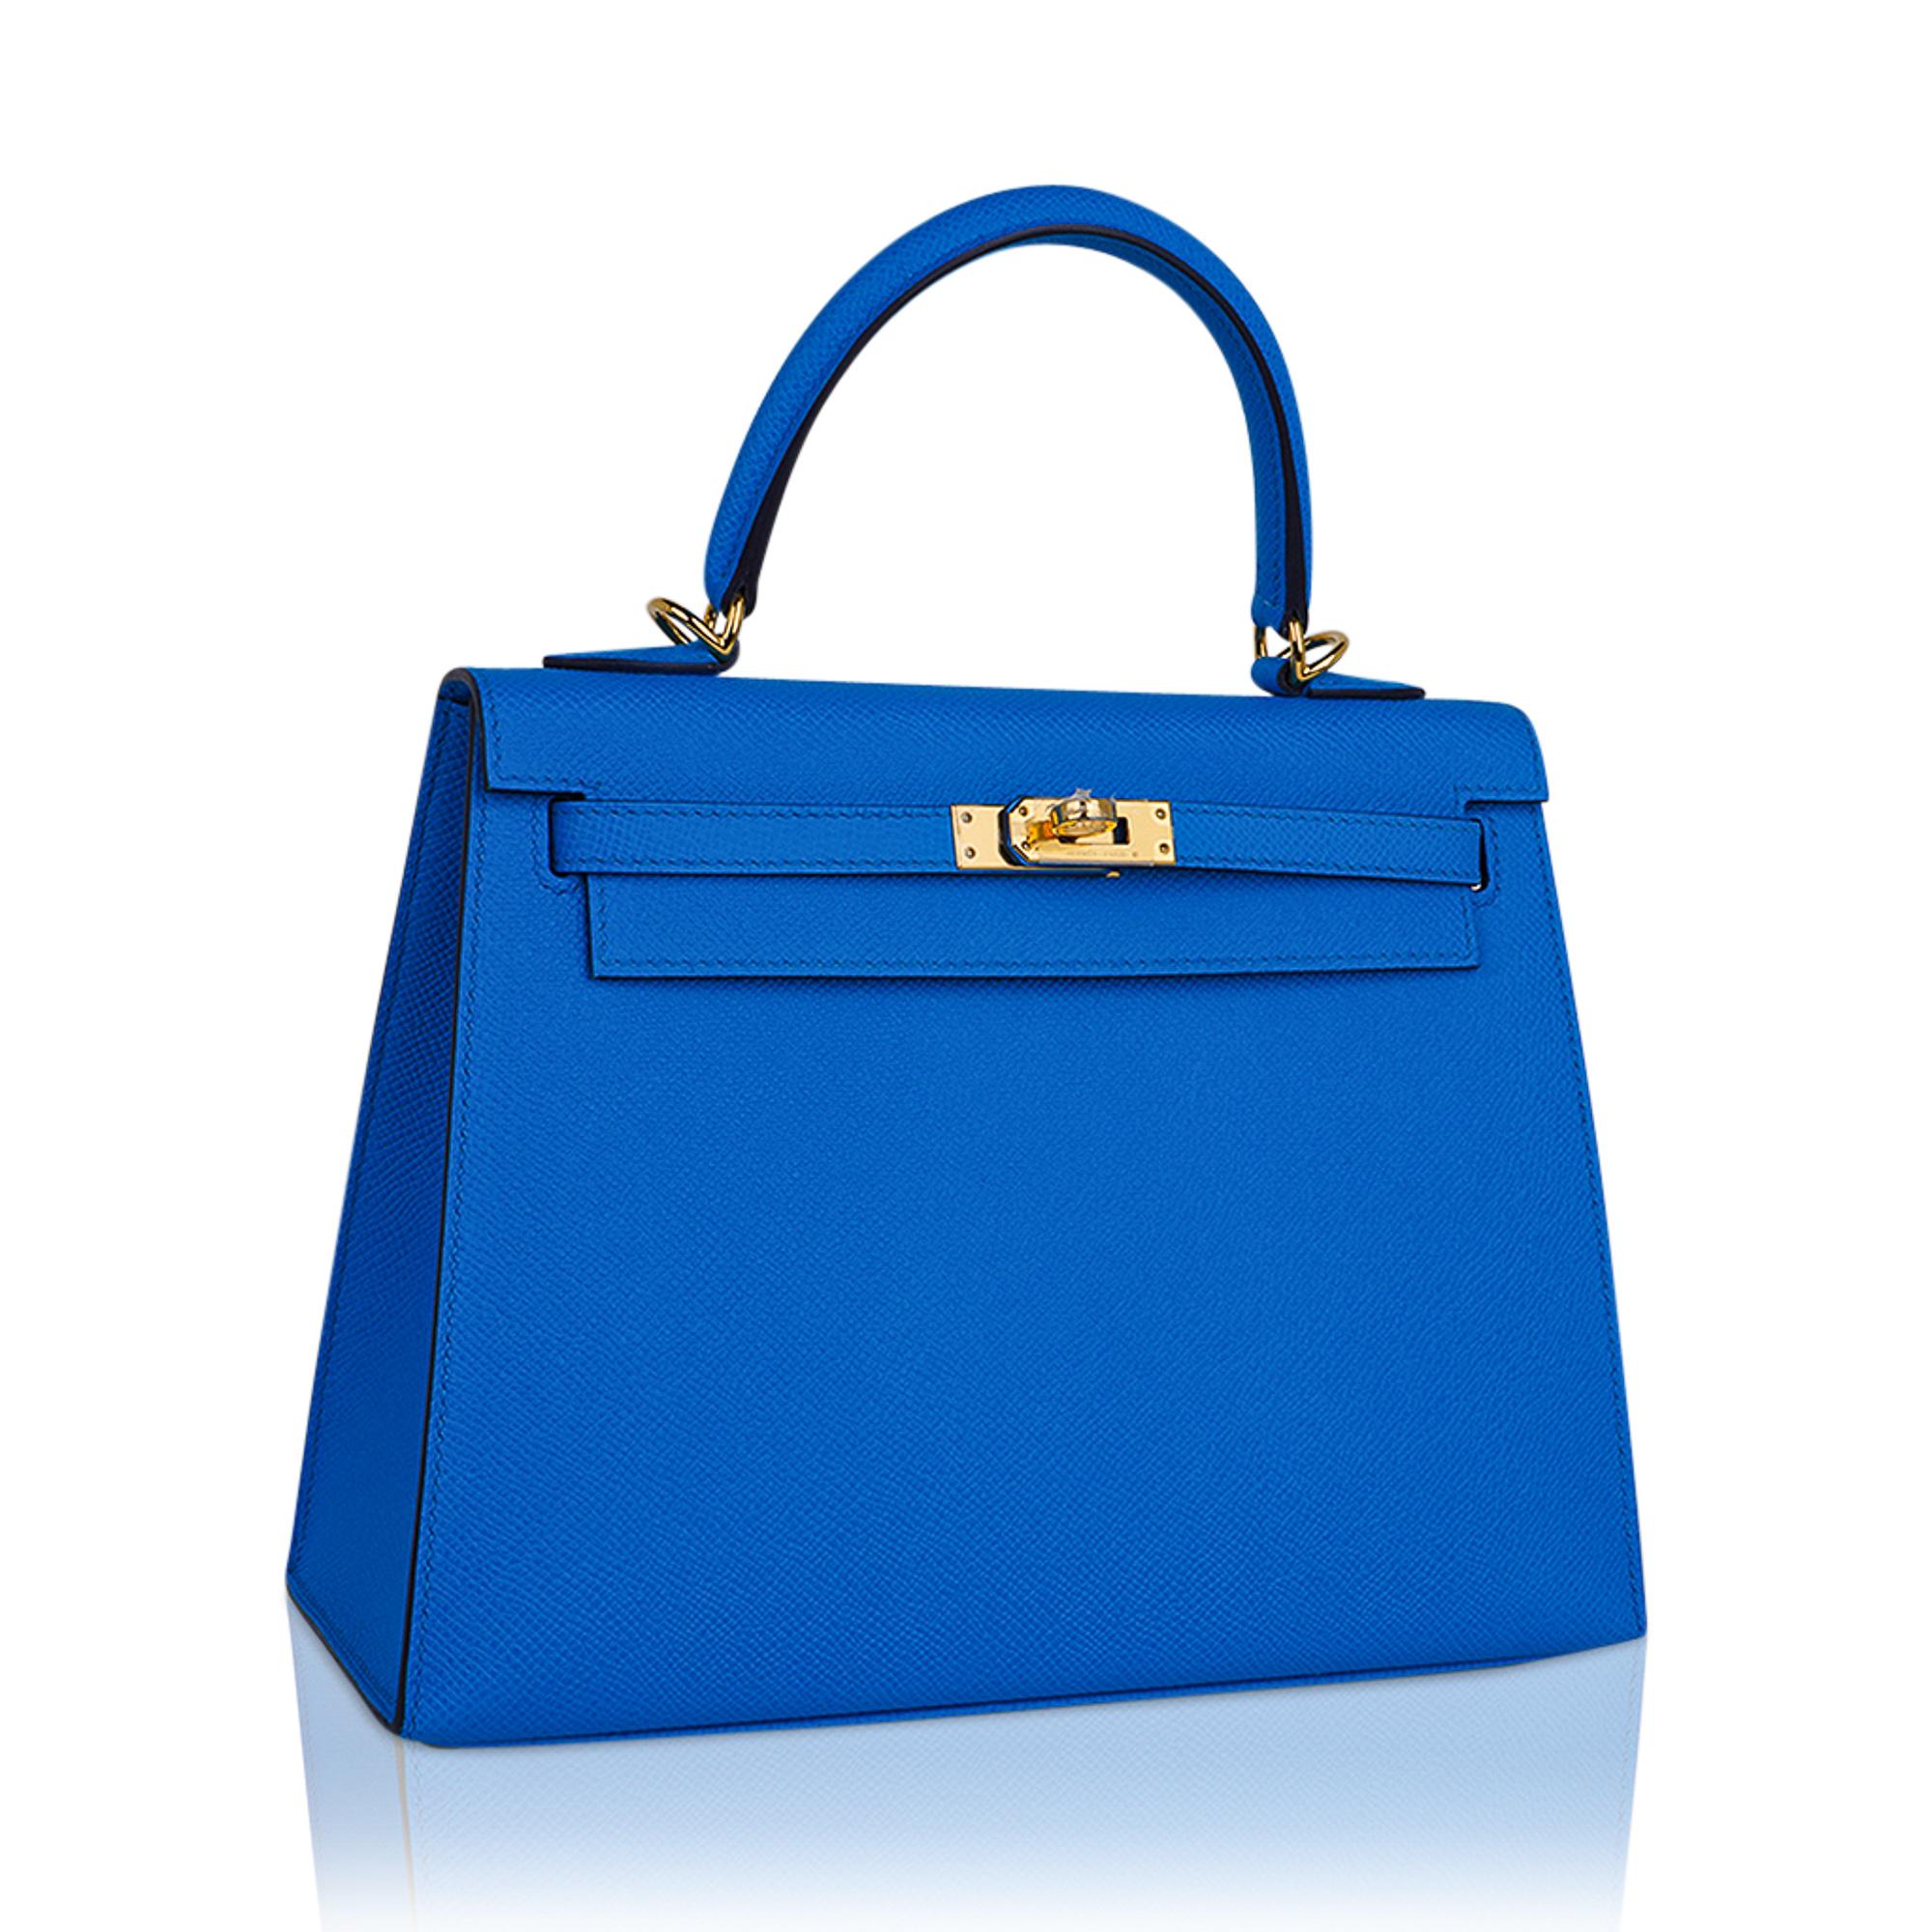 Mightychic propose un exquis sac Hermes Kelly 25 Sellier en Bleu Frida richement saturé.
Cette couleur exotique du sac Hermes Kelly est une belle couleur neutre pour toute l'année.
Accentué par une quincaillerie dorée et un cuir d'epsom.
Livré avec